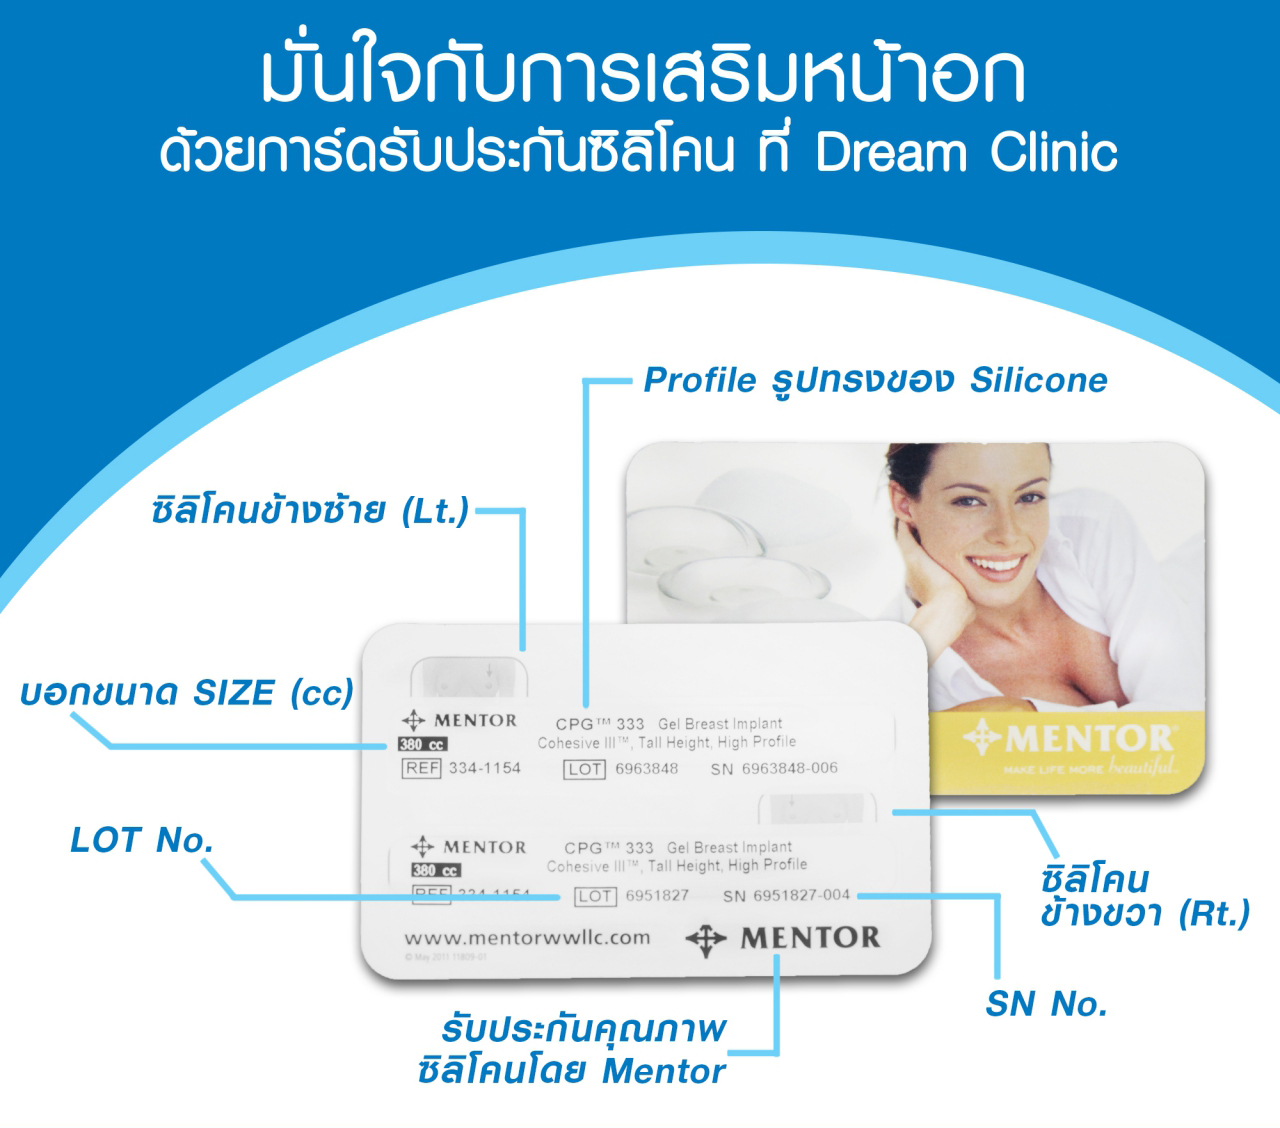 บัตรประจำตัวเสริมหน้าอก Mentor dream clinic บัตรรับประกันคุณภาพ